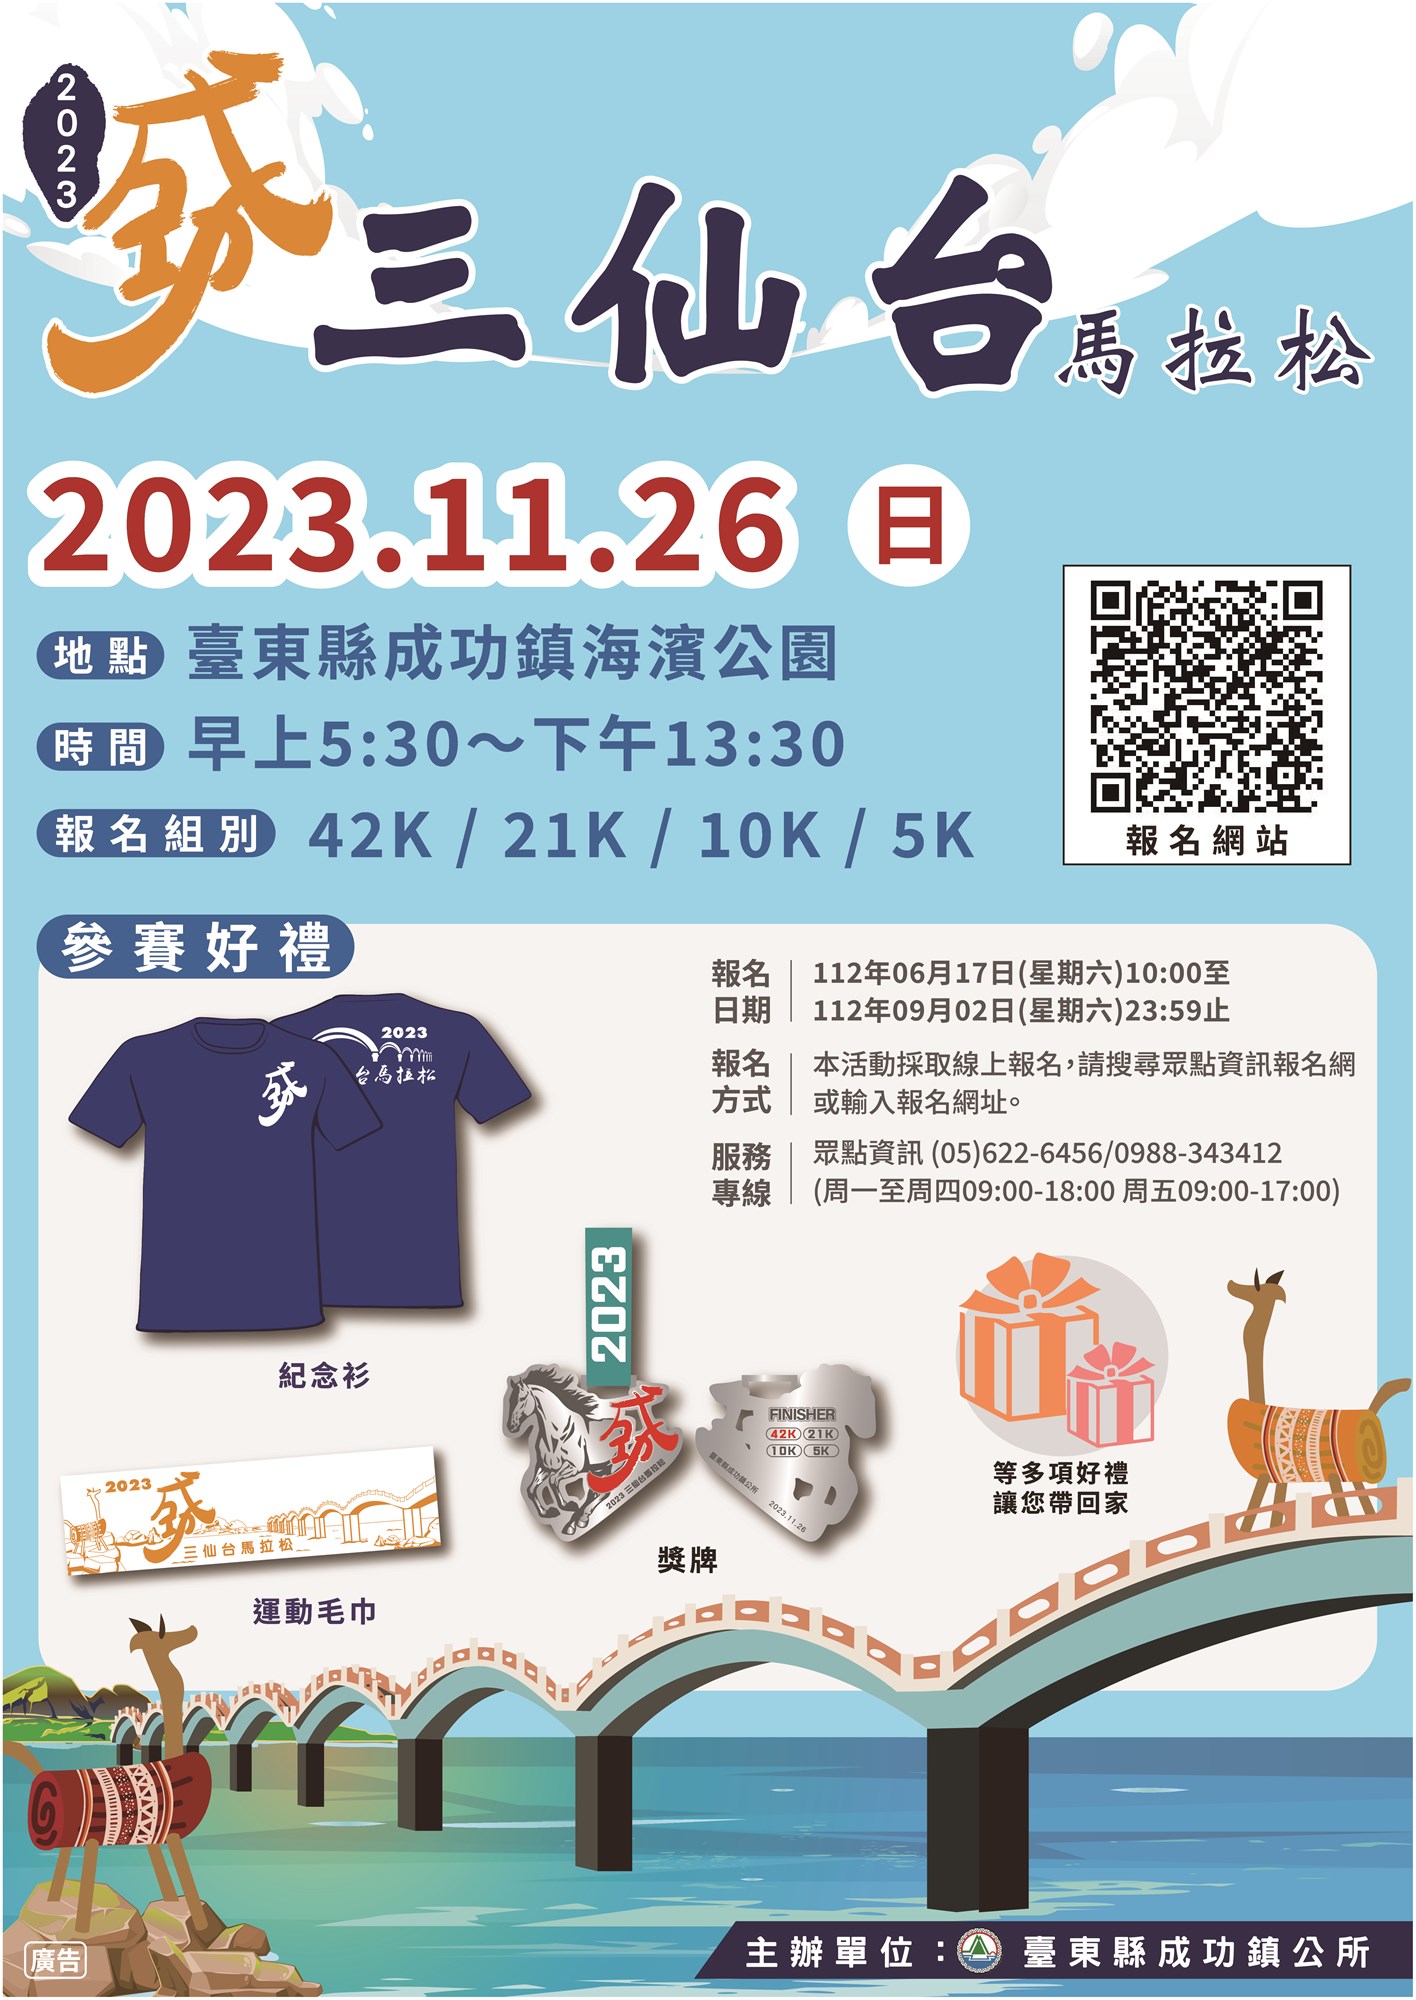 타이둥 2023 싼셴타이 마라톤 대회 성공